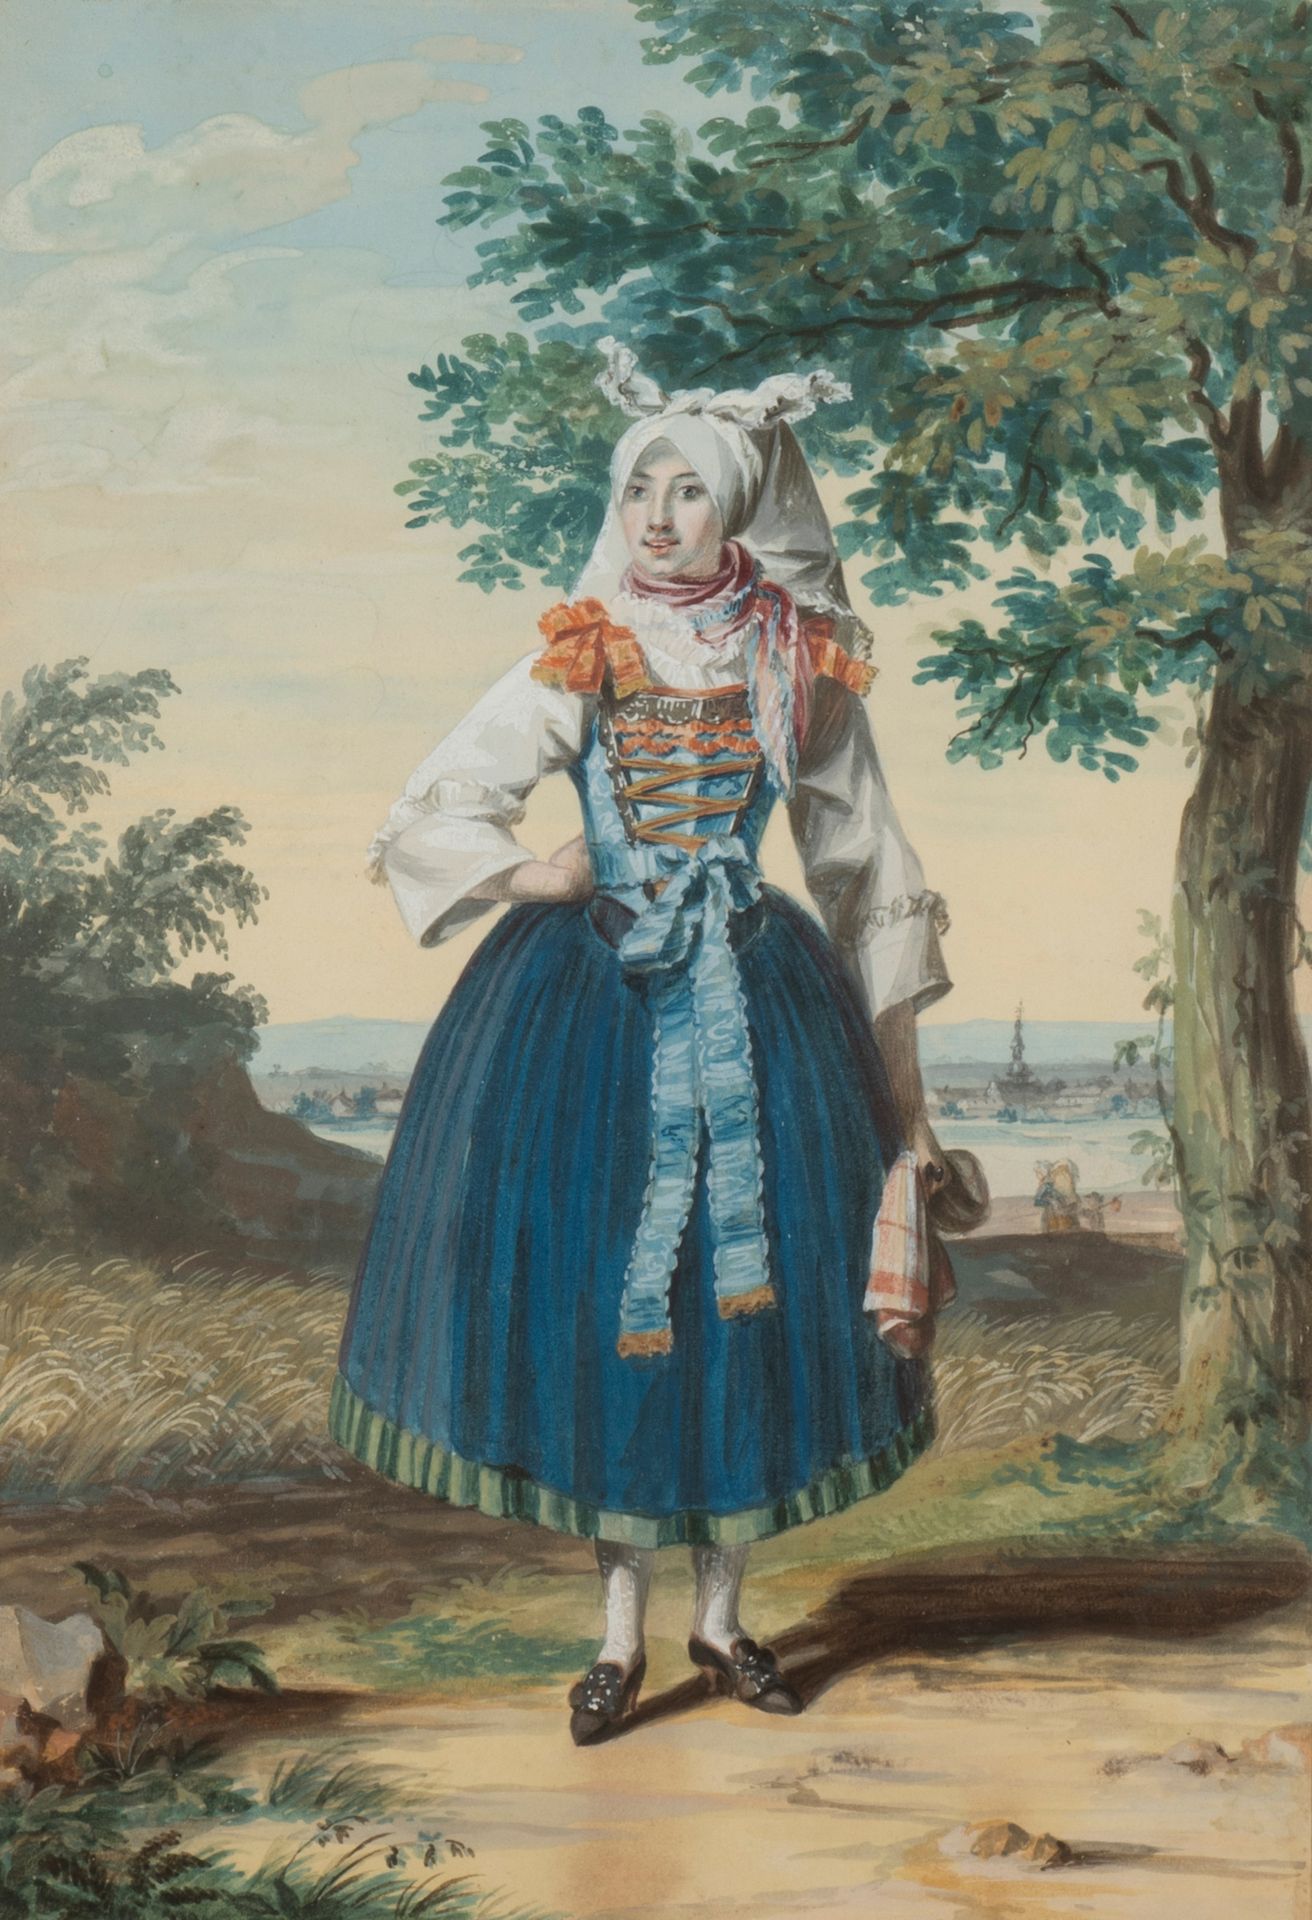 Ecole du XIXème siècle Woman in costume
Watercolour on paper.
Framed.
26 x 19 cm